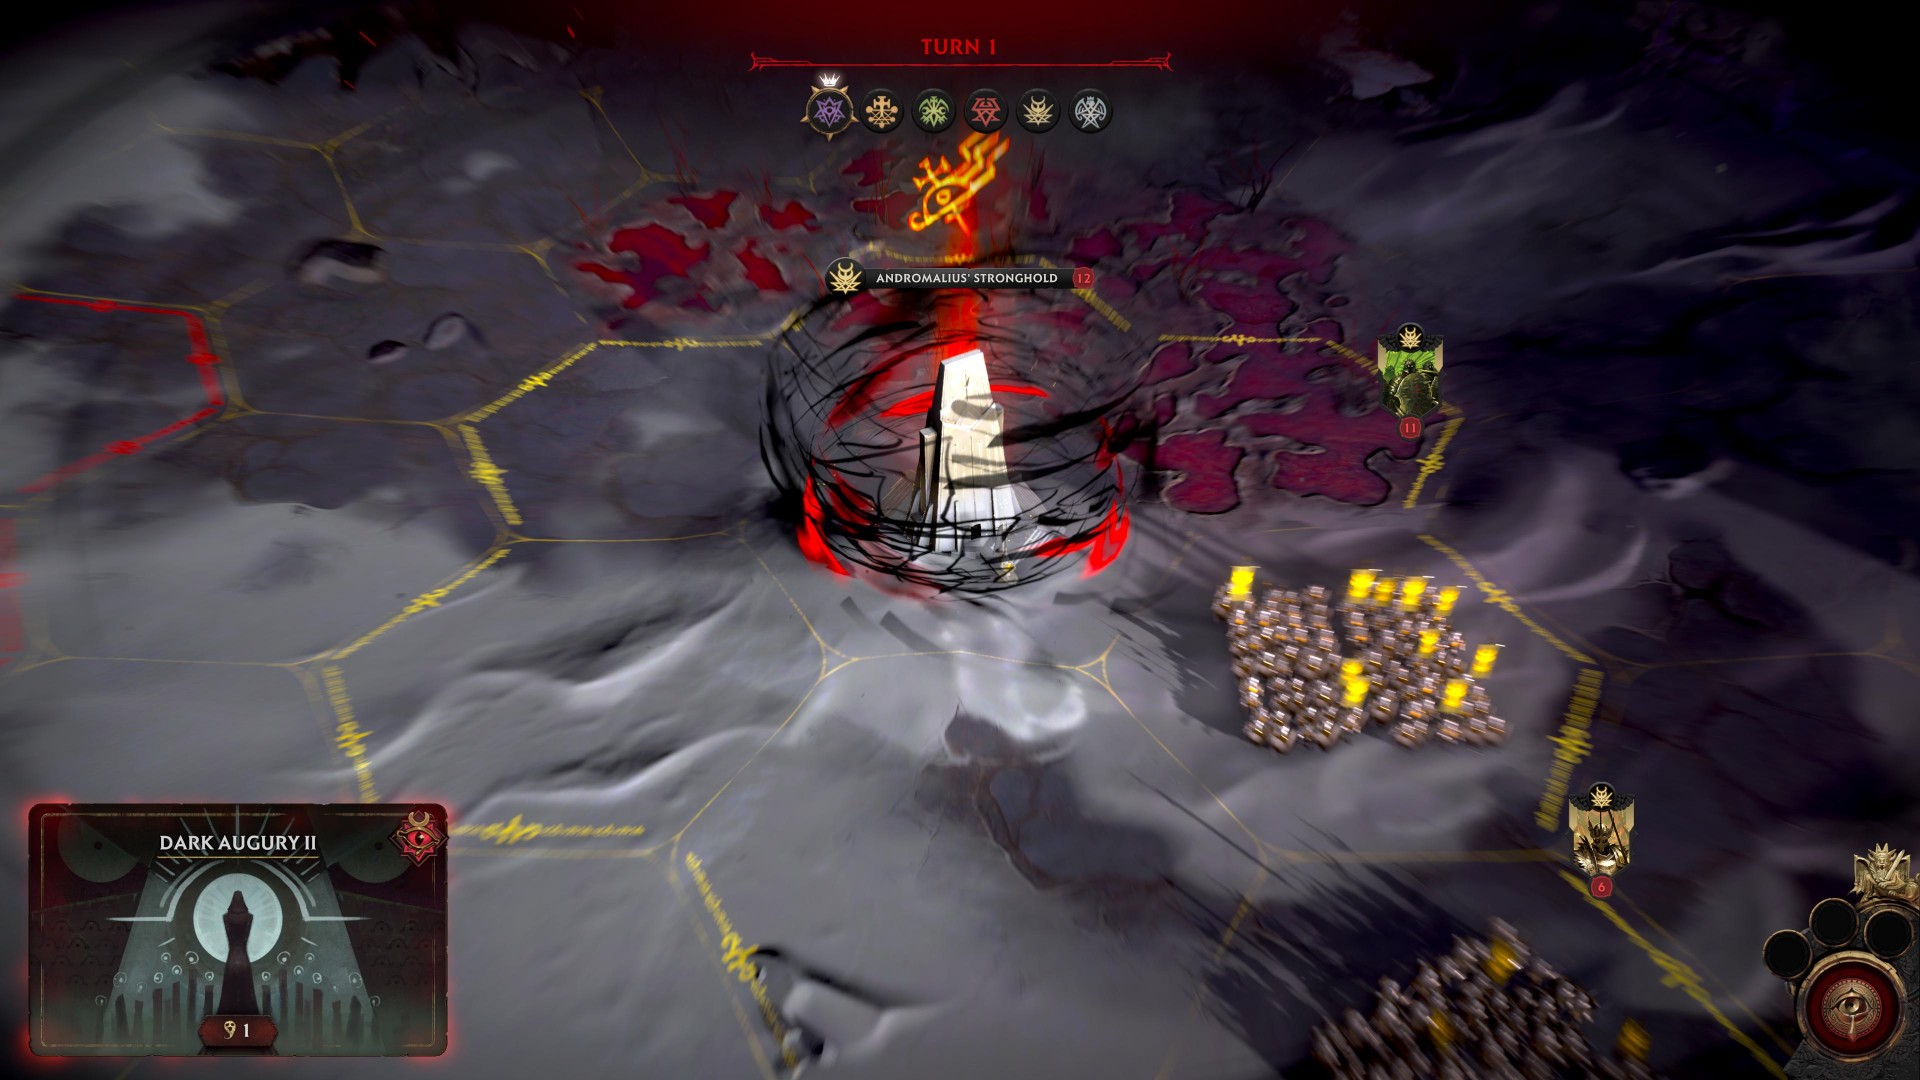 Solium Infernum Steam juego de estrategia multijugador: un campo de batalla infernal en el juego de estrategia Solium Infernum